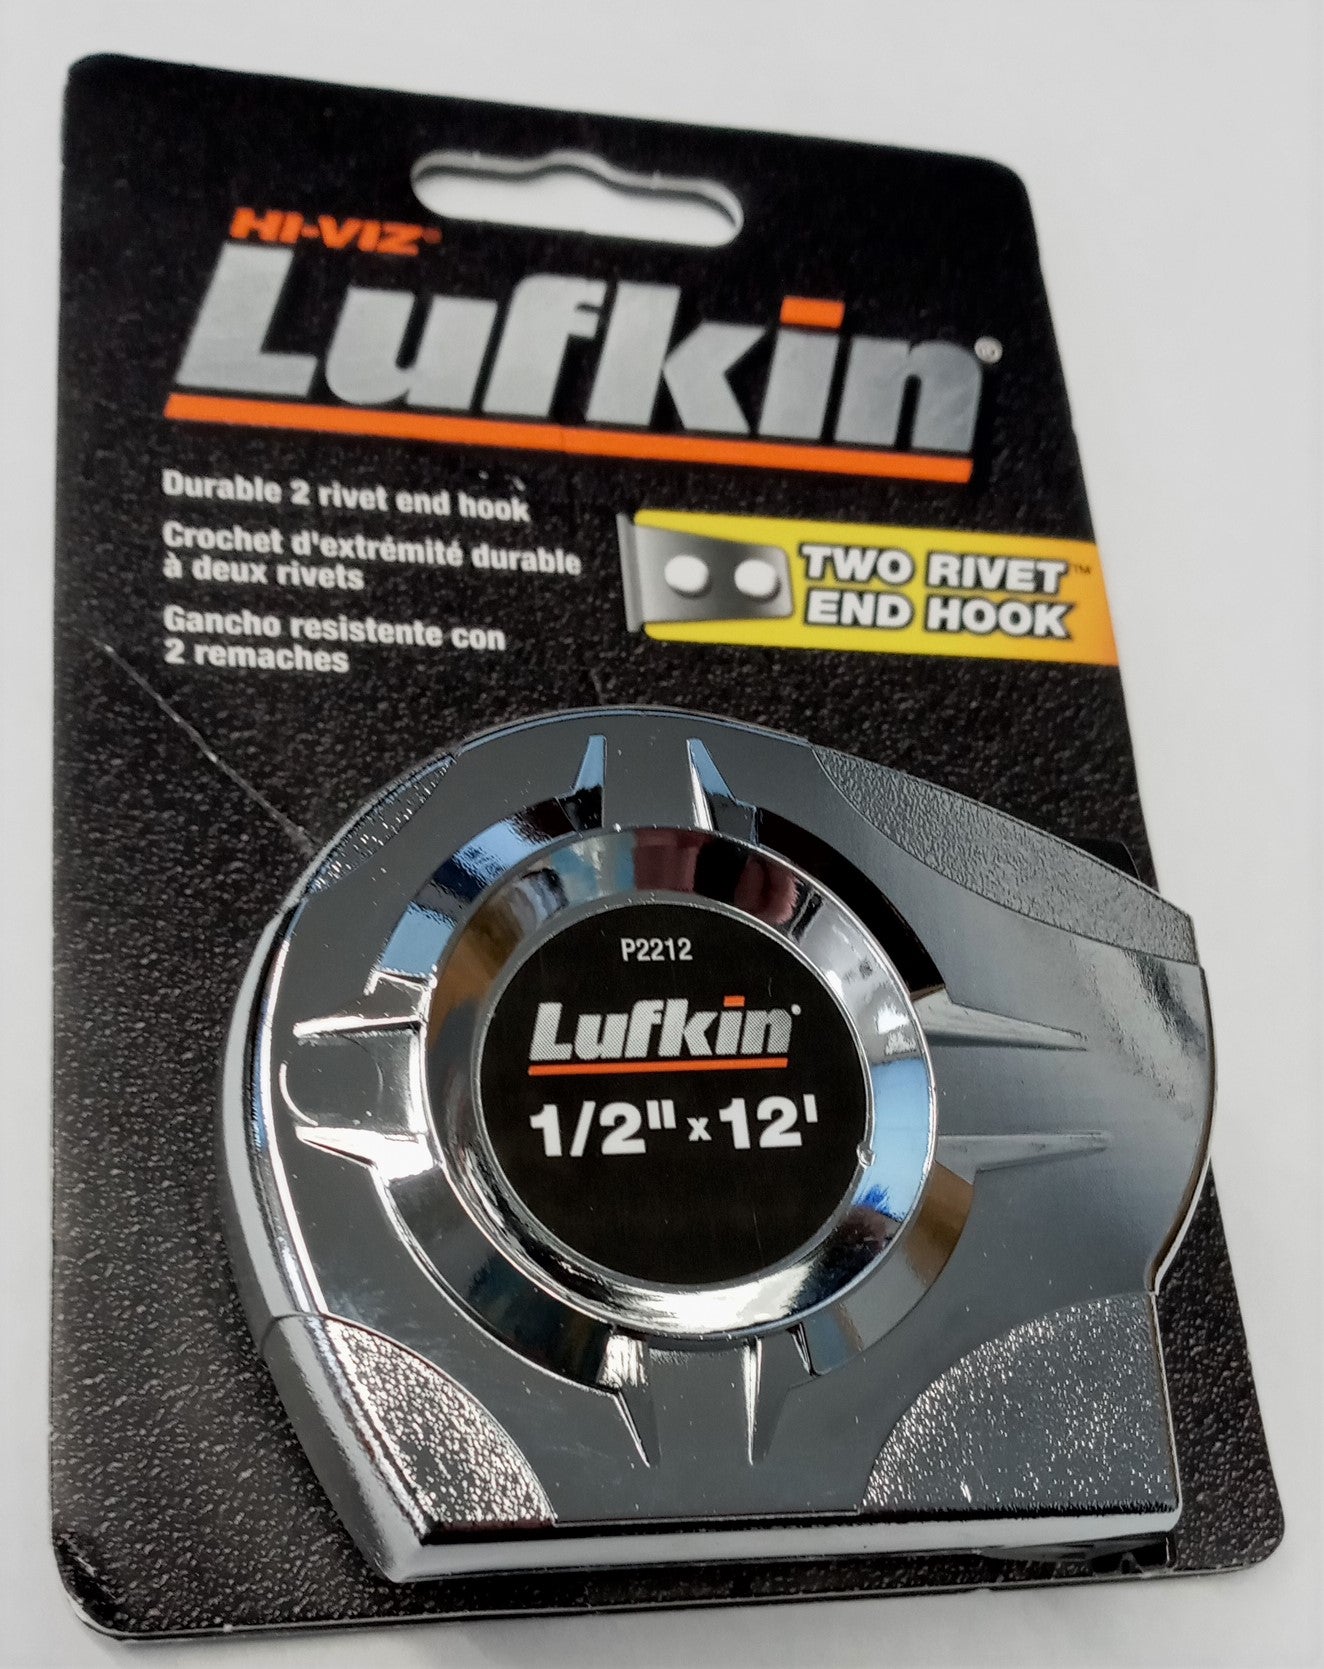 Lufkin P2212 1/2" x 12' Tape Measure Two Rivet End Hook